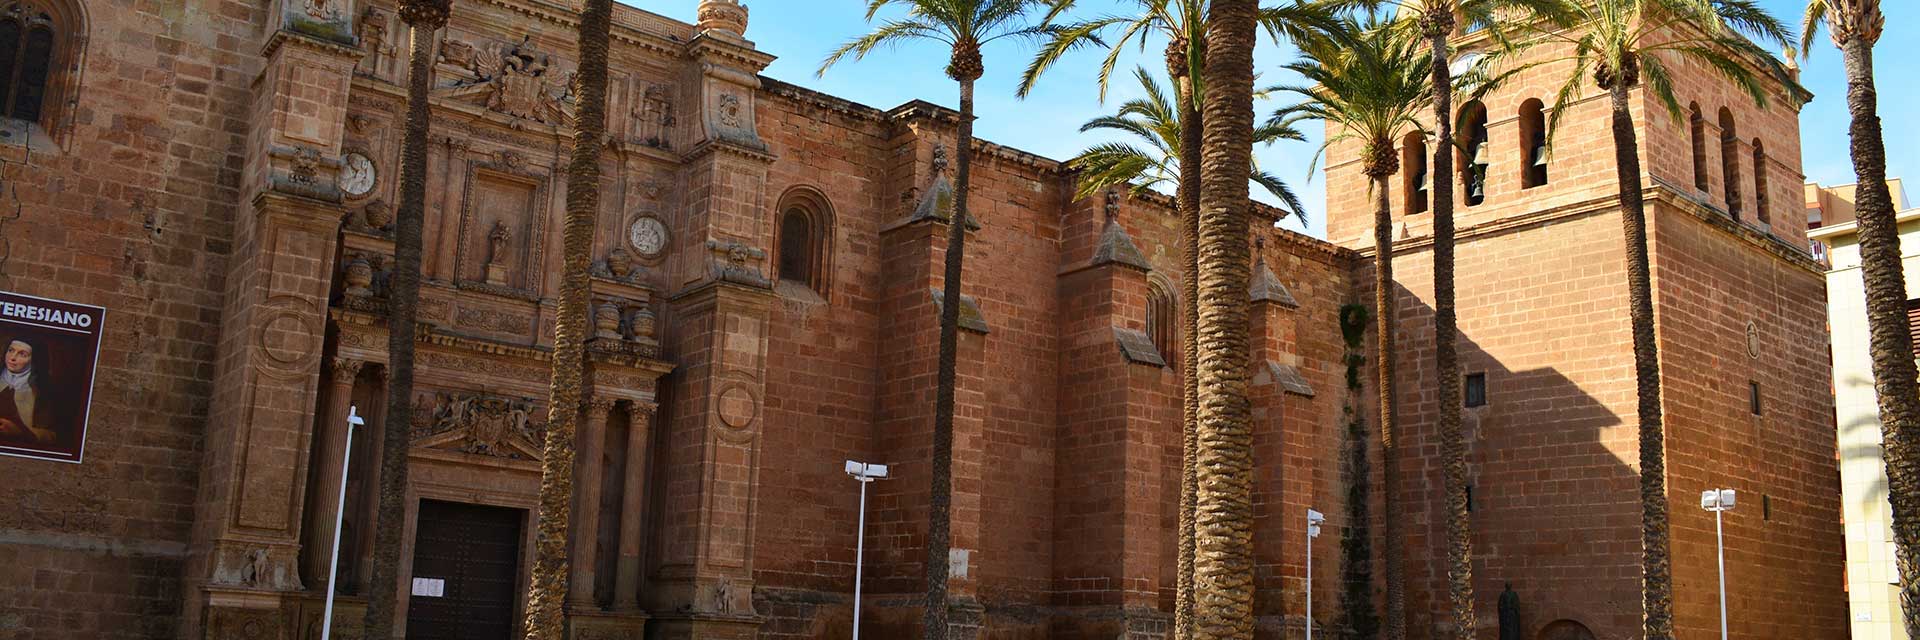 Catedral de Almería【 Guía de la Costa de Almería】